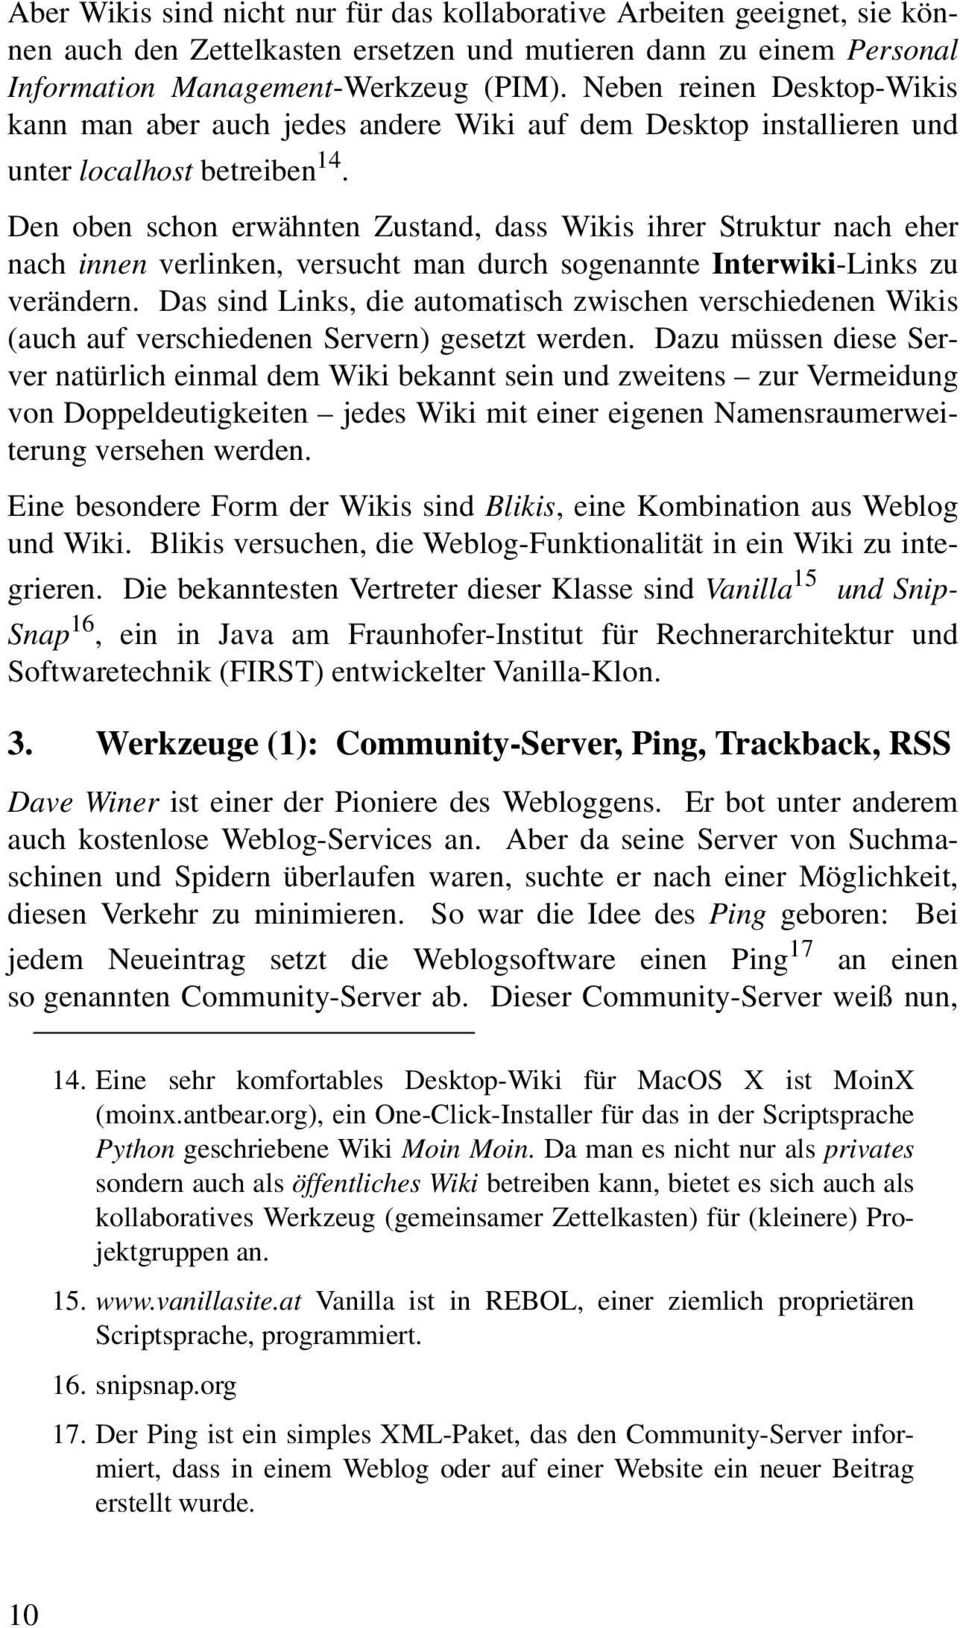 Den oben schon erwähnten Zustand, dass Wikis ihrer Struktur nach eher nach innen verlinken, versucht man durch sogenannte Interwiki-Links zu verändern.